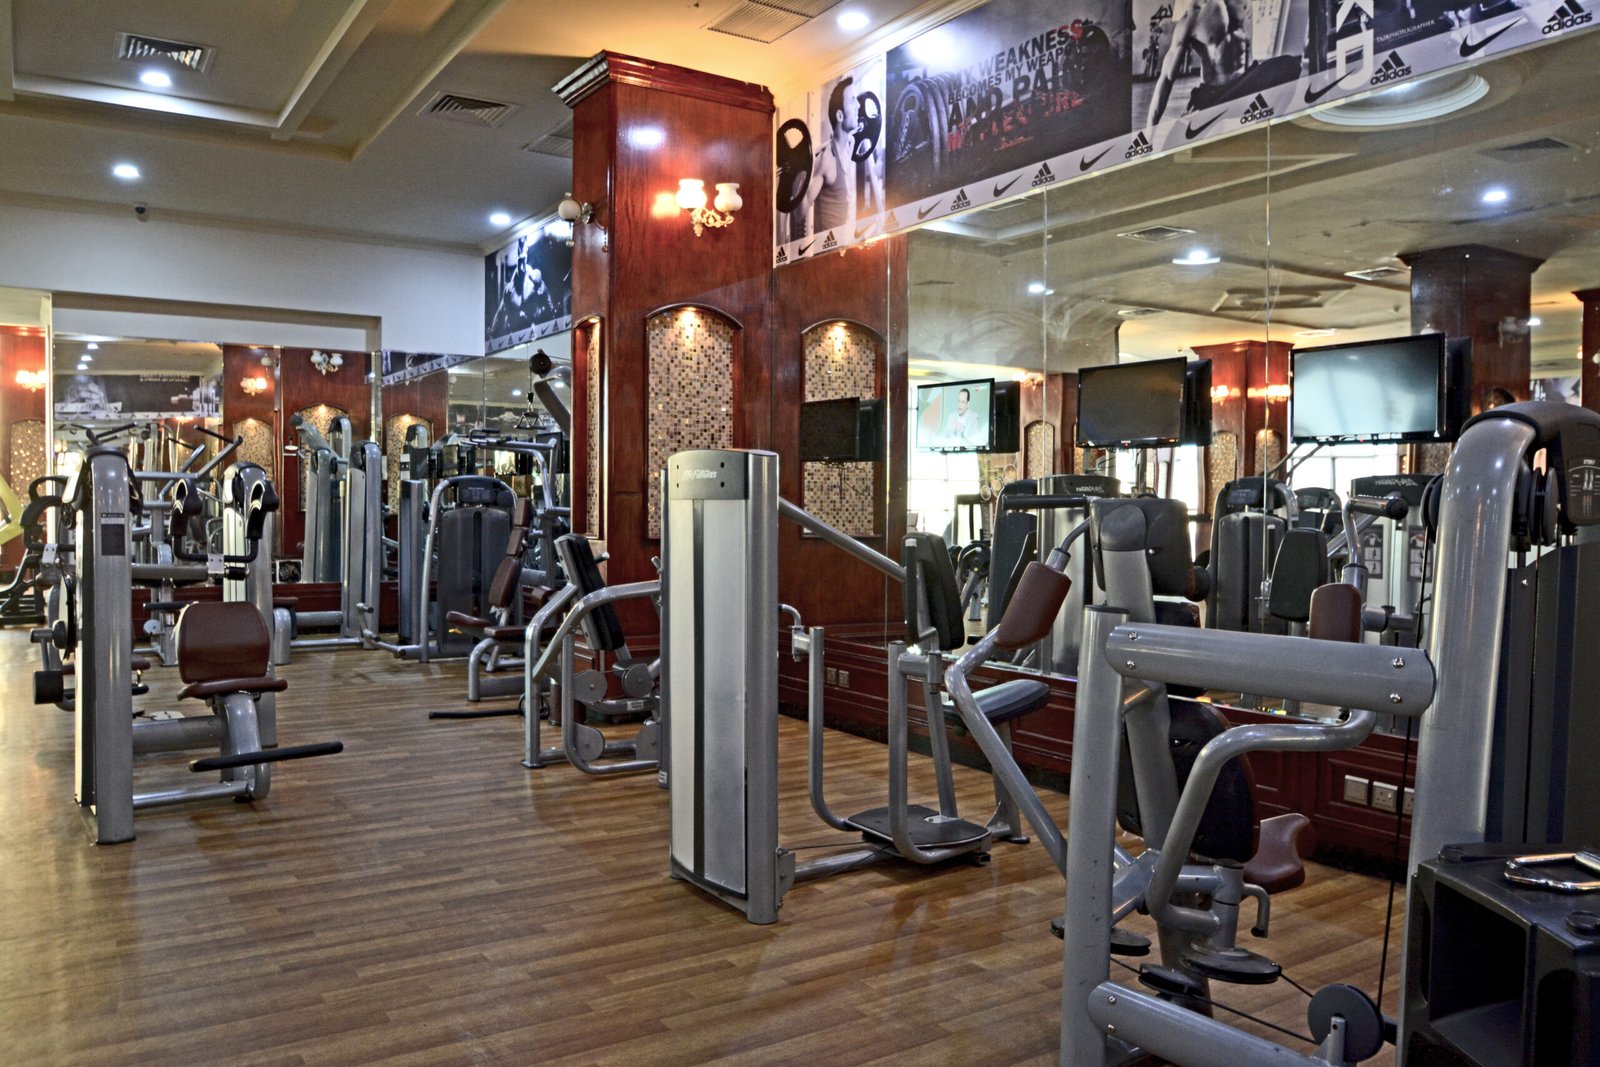 Gym _ Fitness center4